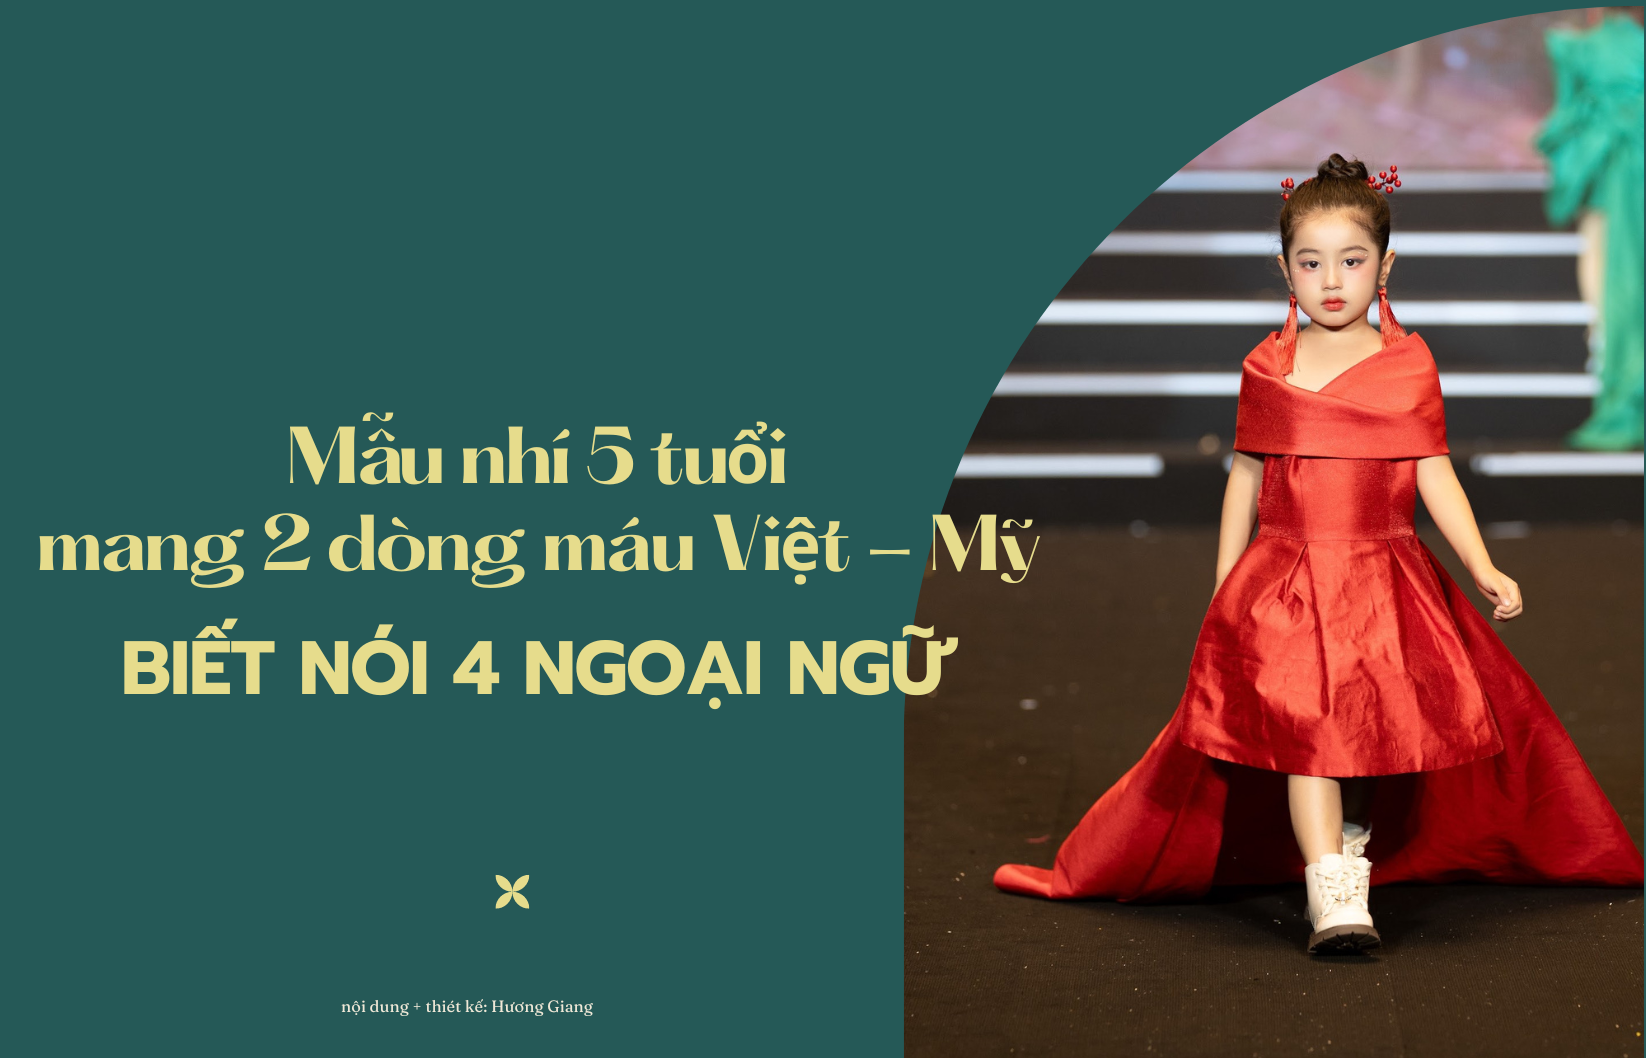 Mẫu nhí 5 tuổi xinh như thiên thần mang 2 dòng máu Việt - Mỹ biết nói 4 ngoại ngữ